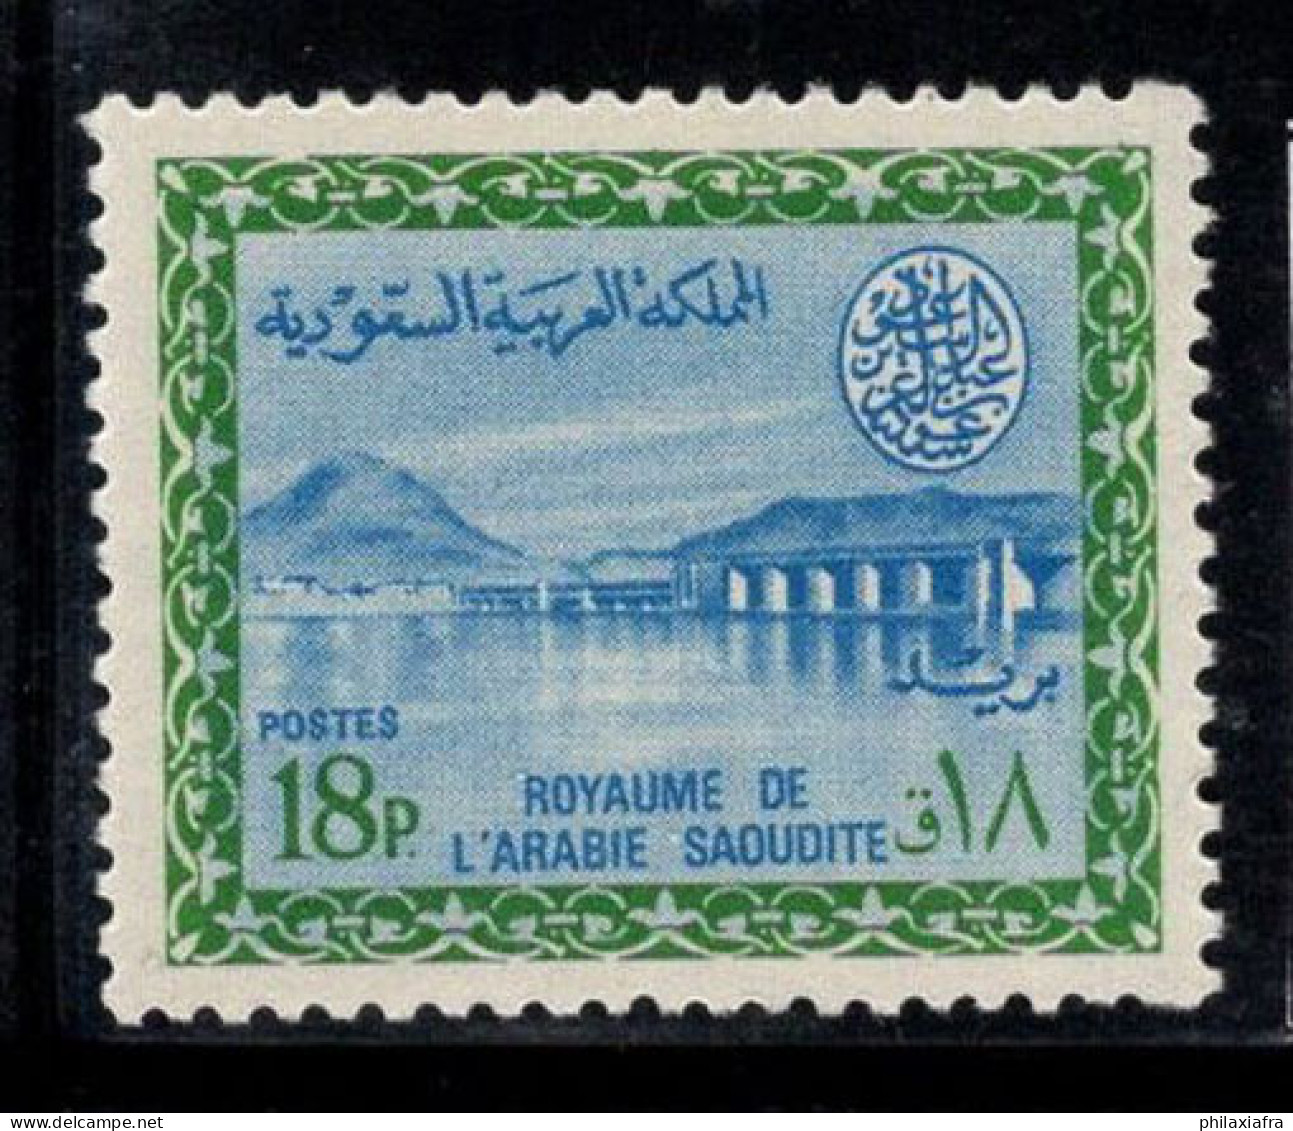 Arabie Saoudite 1965-72 Mi. 232 Neuf ** 100% 18 Pia, Barrage De Wadi Hanifa - Arabie Saoudite